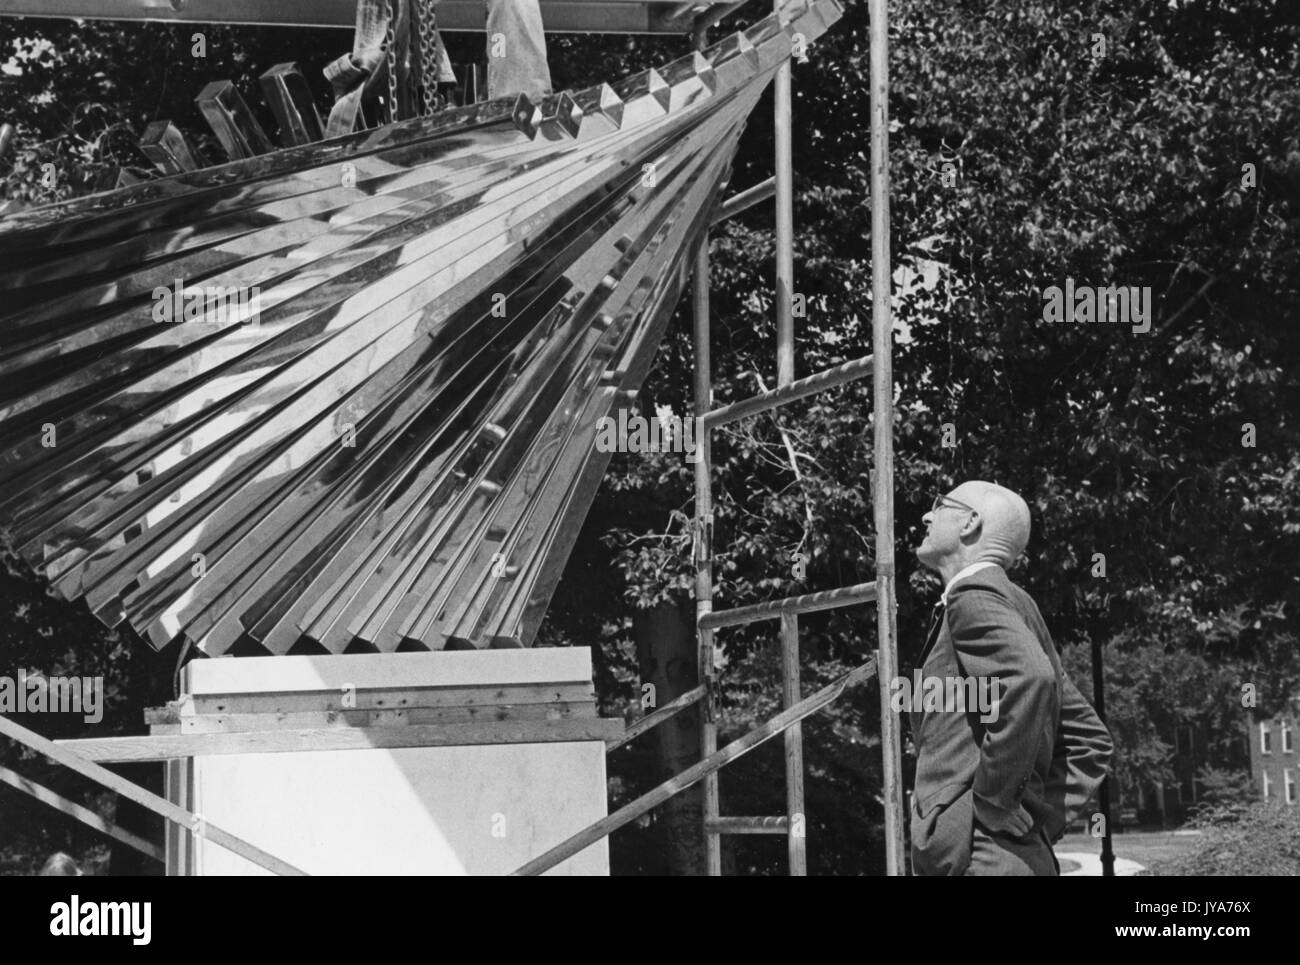 Un onlooker esamina la scultura centenaria, creata dallo scultore David Brown per celebrare il centesimo anniversario della fondazione della Johns Hopkins University, che sarà rivelata nel campus di Homewood dell'Università di Baltimora, Maryland. 1976. Foto Stock